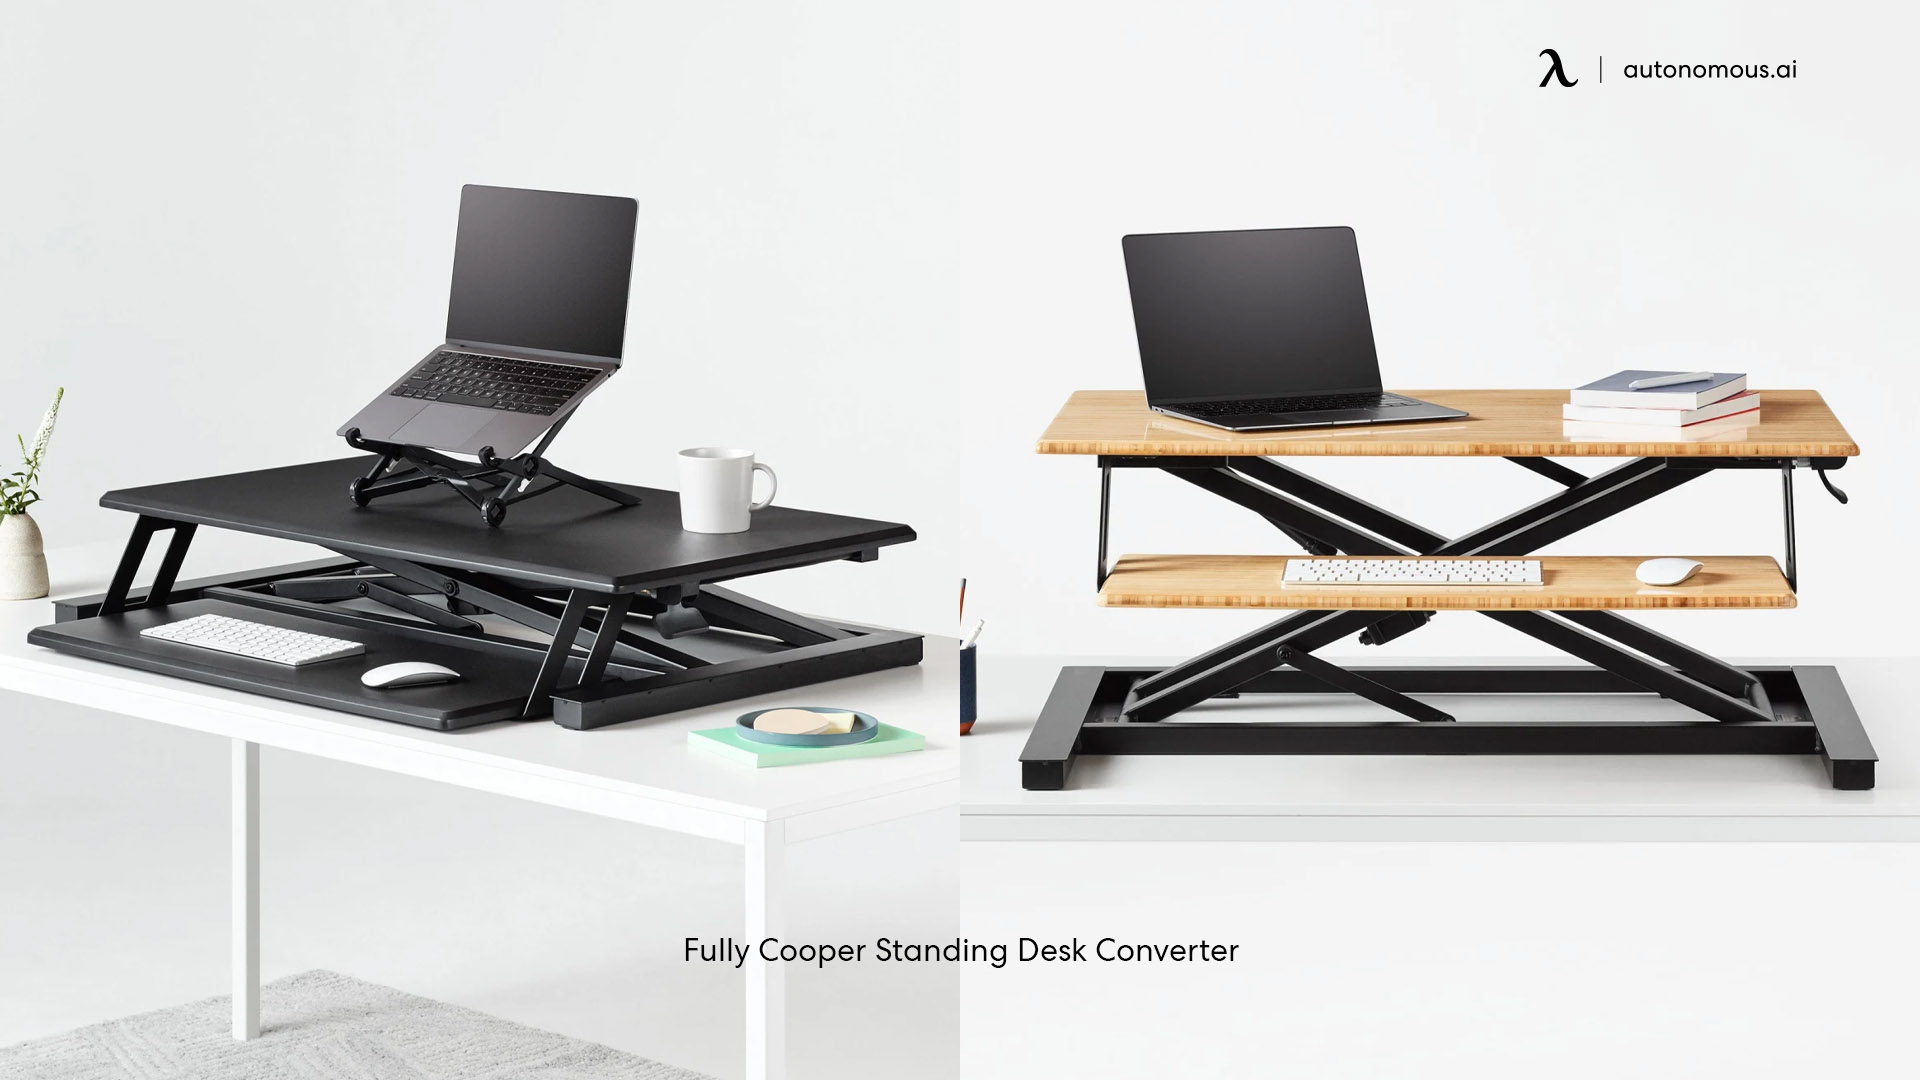 Fully Cooper standing desk converter for laptop